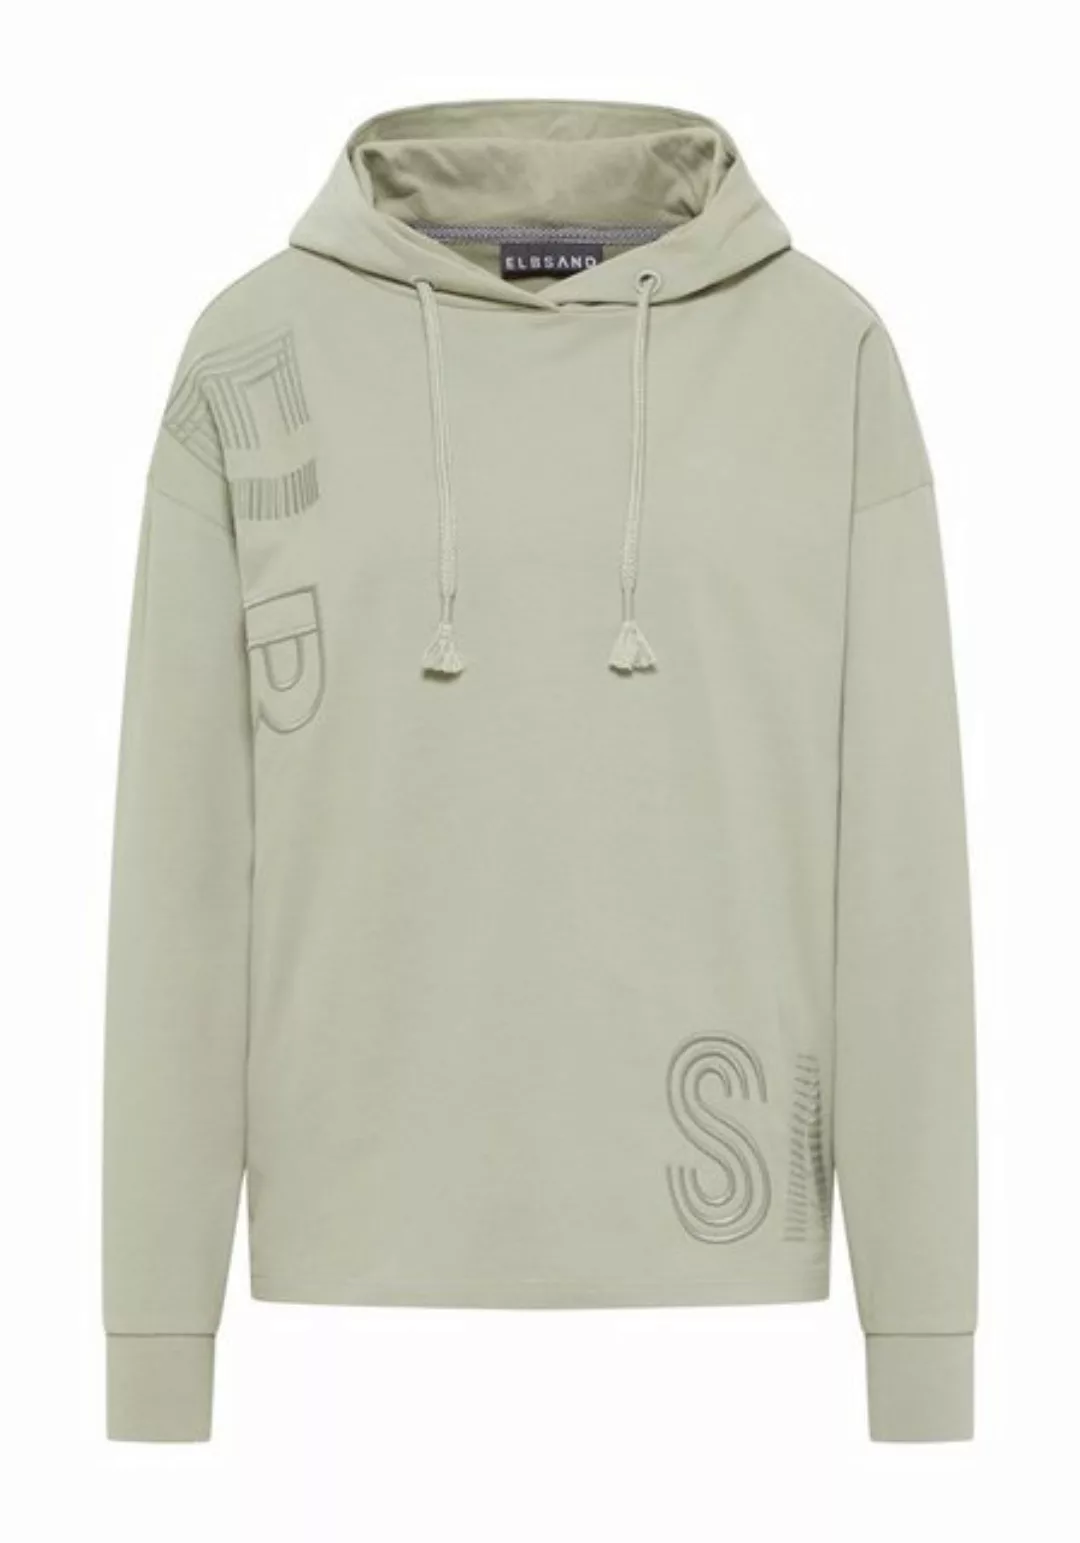 Elbsand Sweatshirt 70703 00 khaki günstig online kaufen